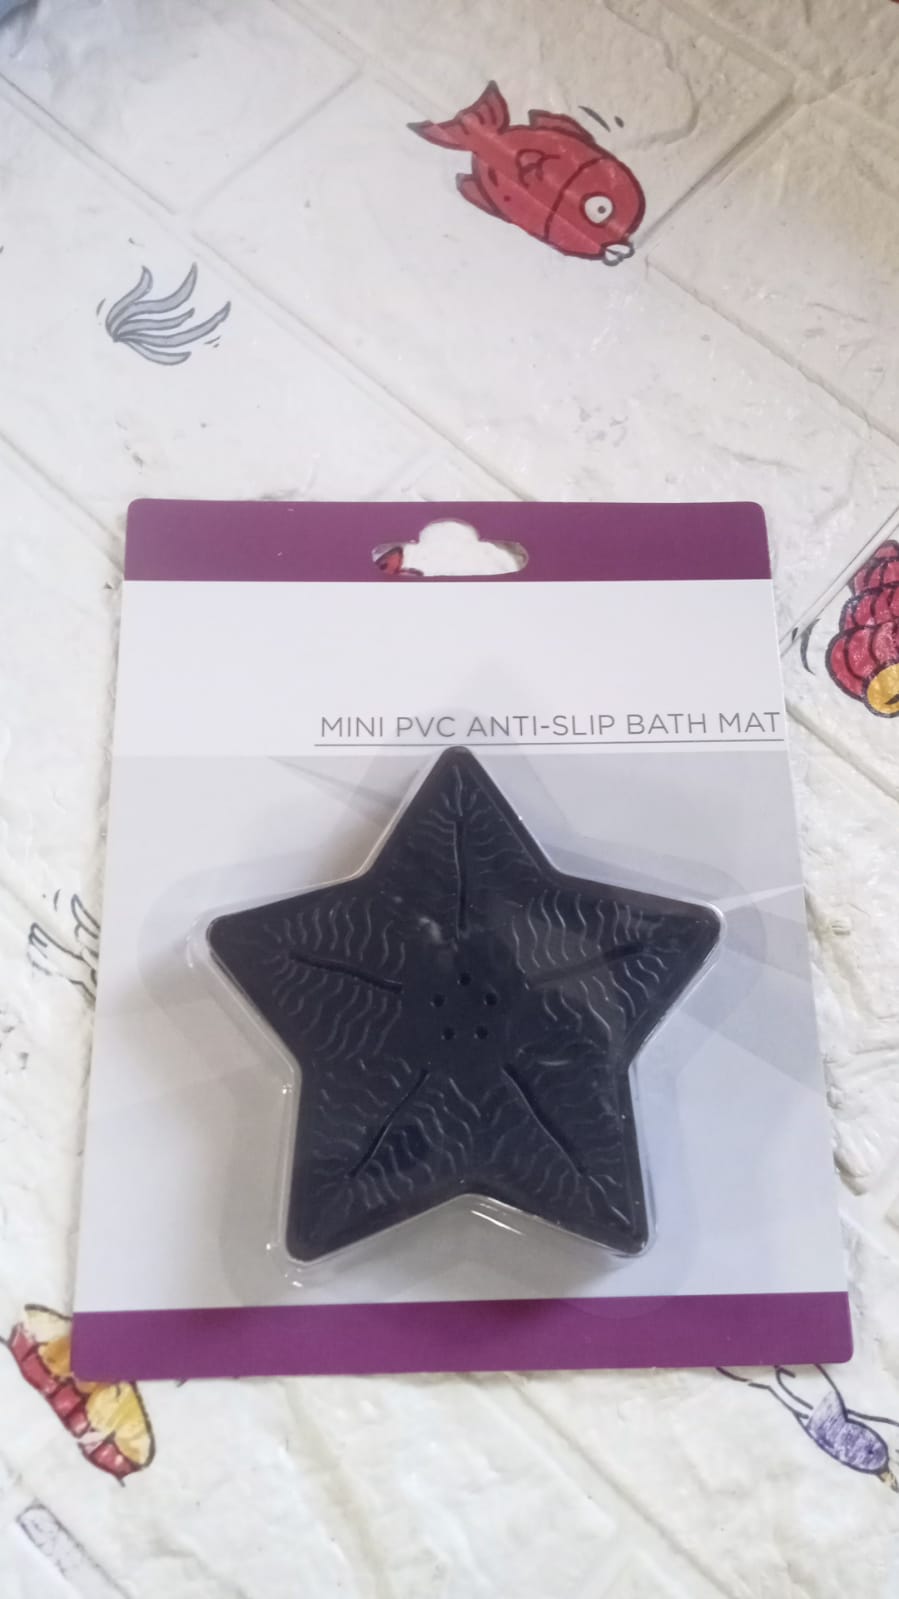 Mini  Pvc Anti-Slip Bat Mat Non Slip Baby Bath Mats, Mini Child Safety Anti Slip Shower Mats Star,& Leaf Shaped for Kids (4 pc Set)